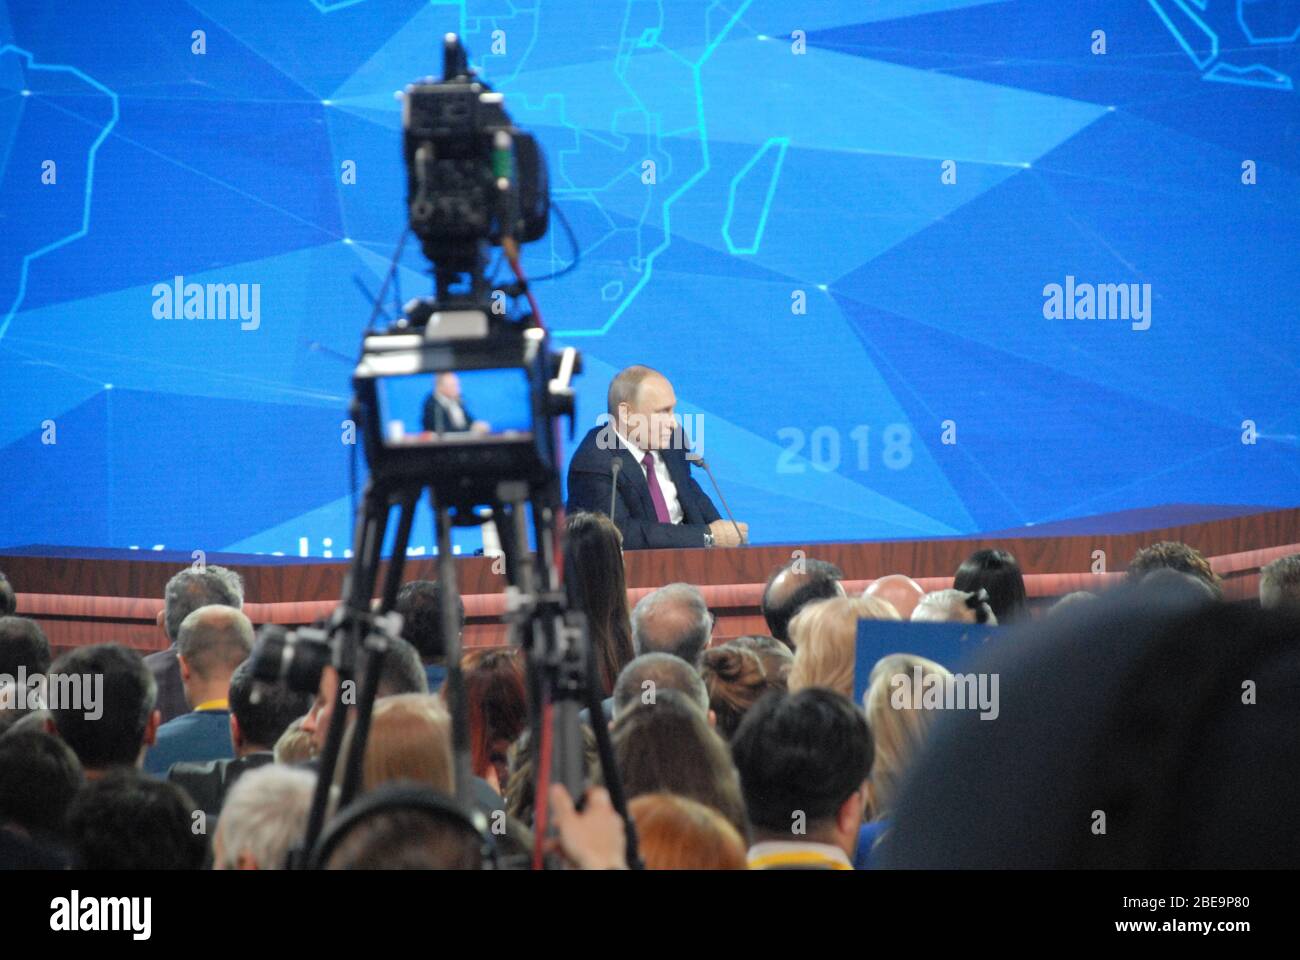 Les journalistes et les membres des médias assistent à la conférence de presse annuelle du Président de la Fédération de Russie Vladimir Poutine au World Trade Center Banque D'Images